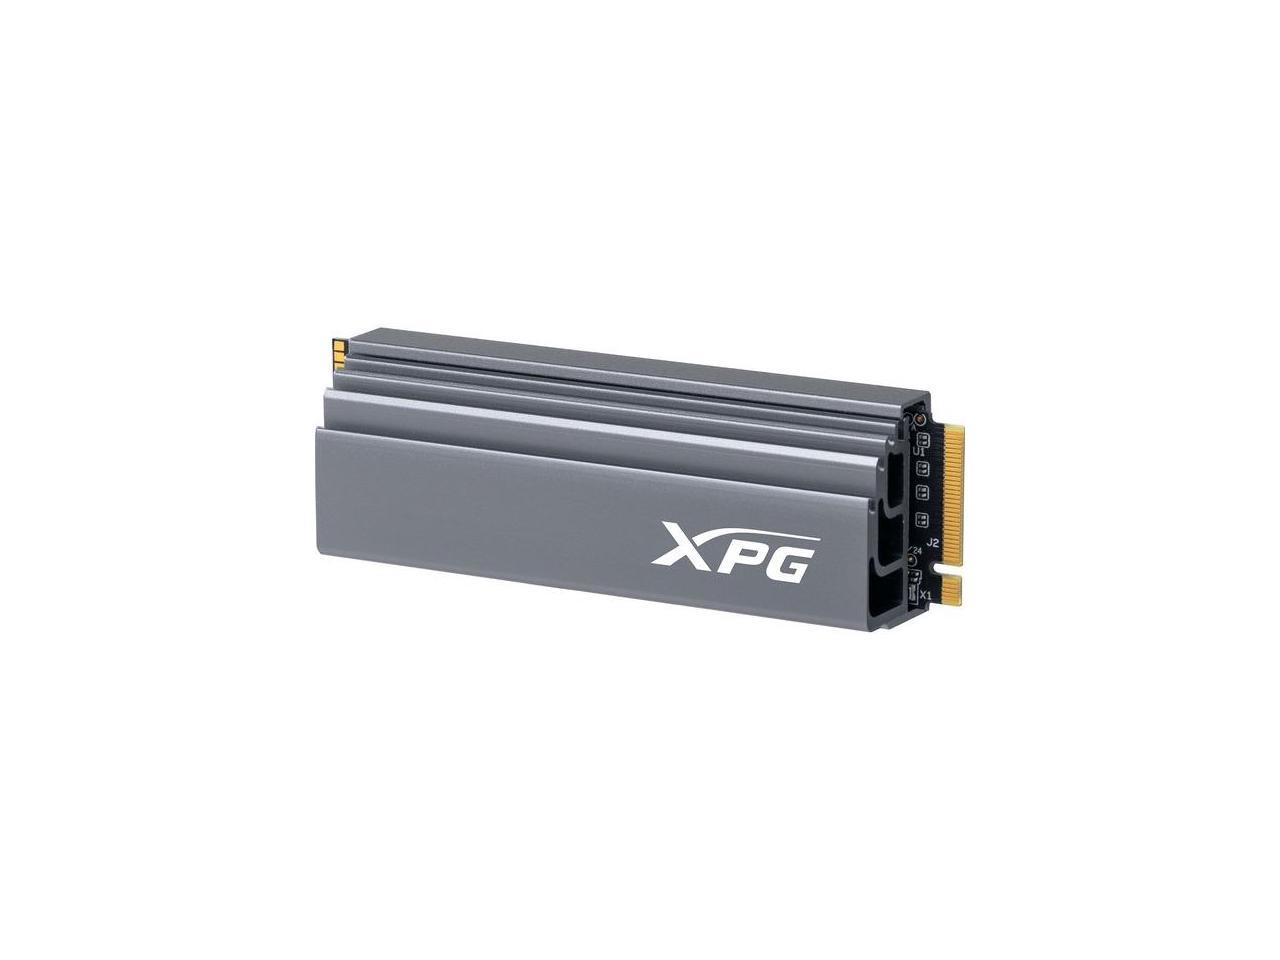 ADATA XPG GAMMIX S70 PCIe GEN4x4 M.2 2280 2TB SSD - AGAMMIXS70-2T-C